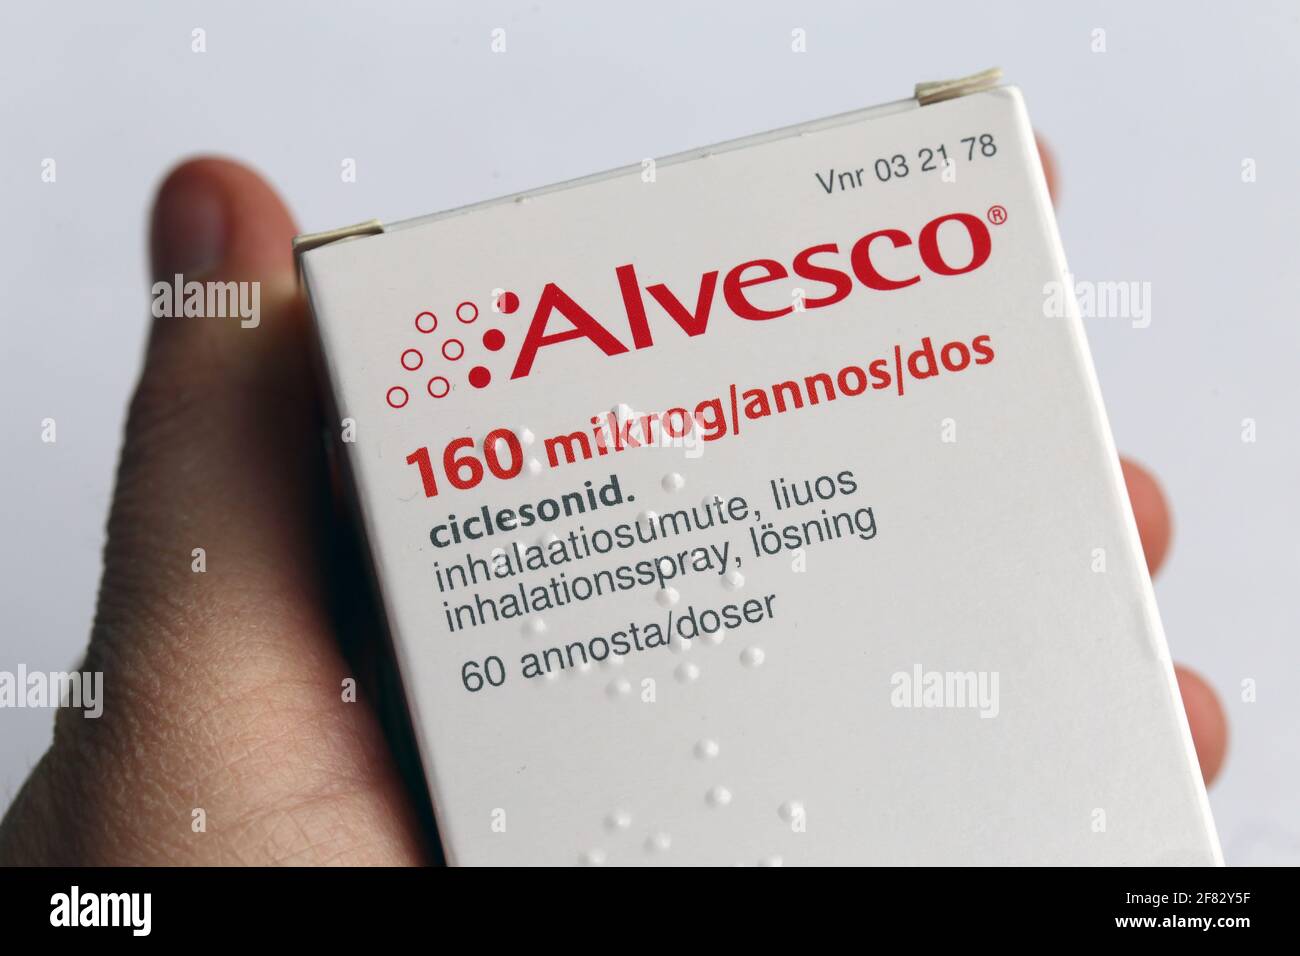 Alvesco 160 mikrograms per dose astma medicine Aprile 2020, Espoo, Finlandia. Alvesco include cortisone usato per trattare l'infiammazione dei polmoni. Foto Stock